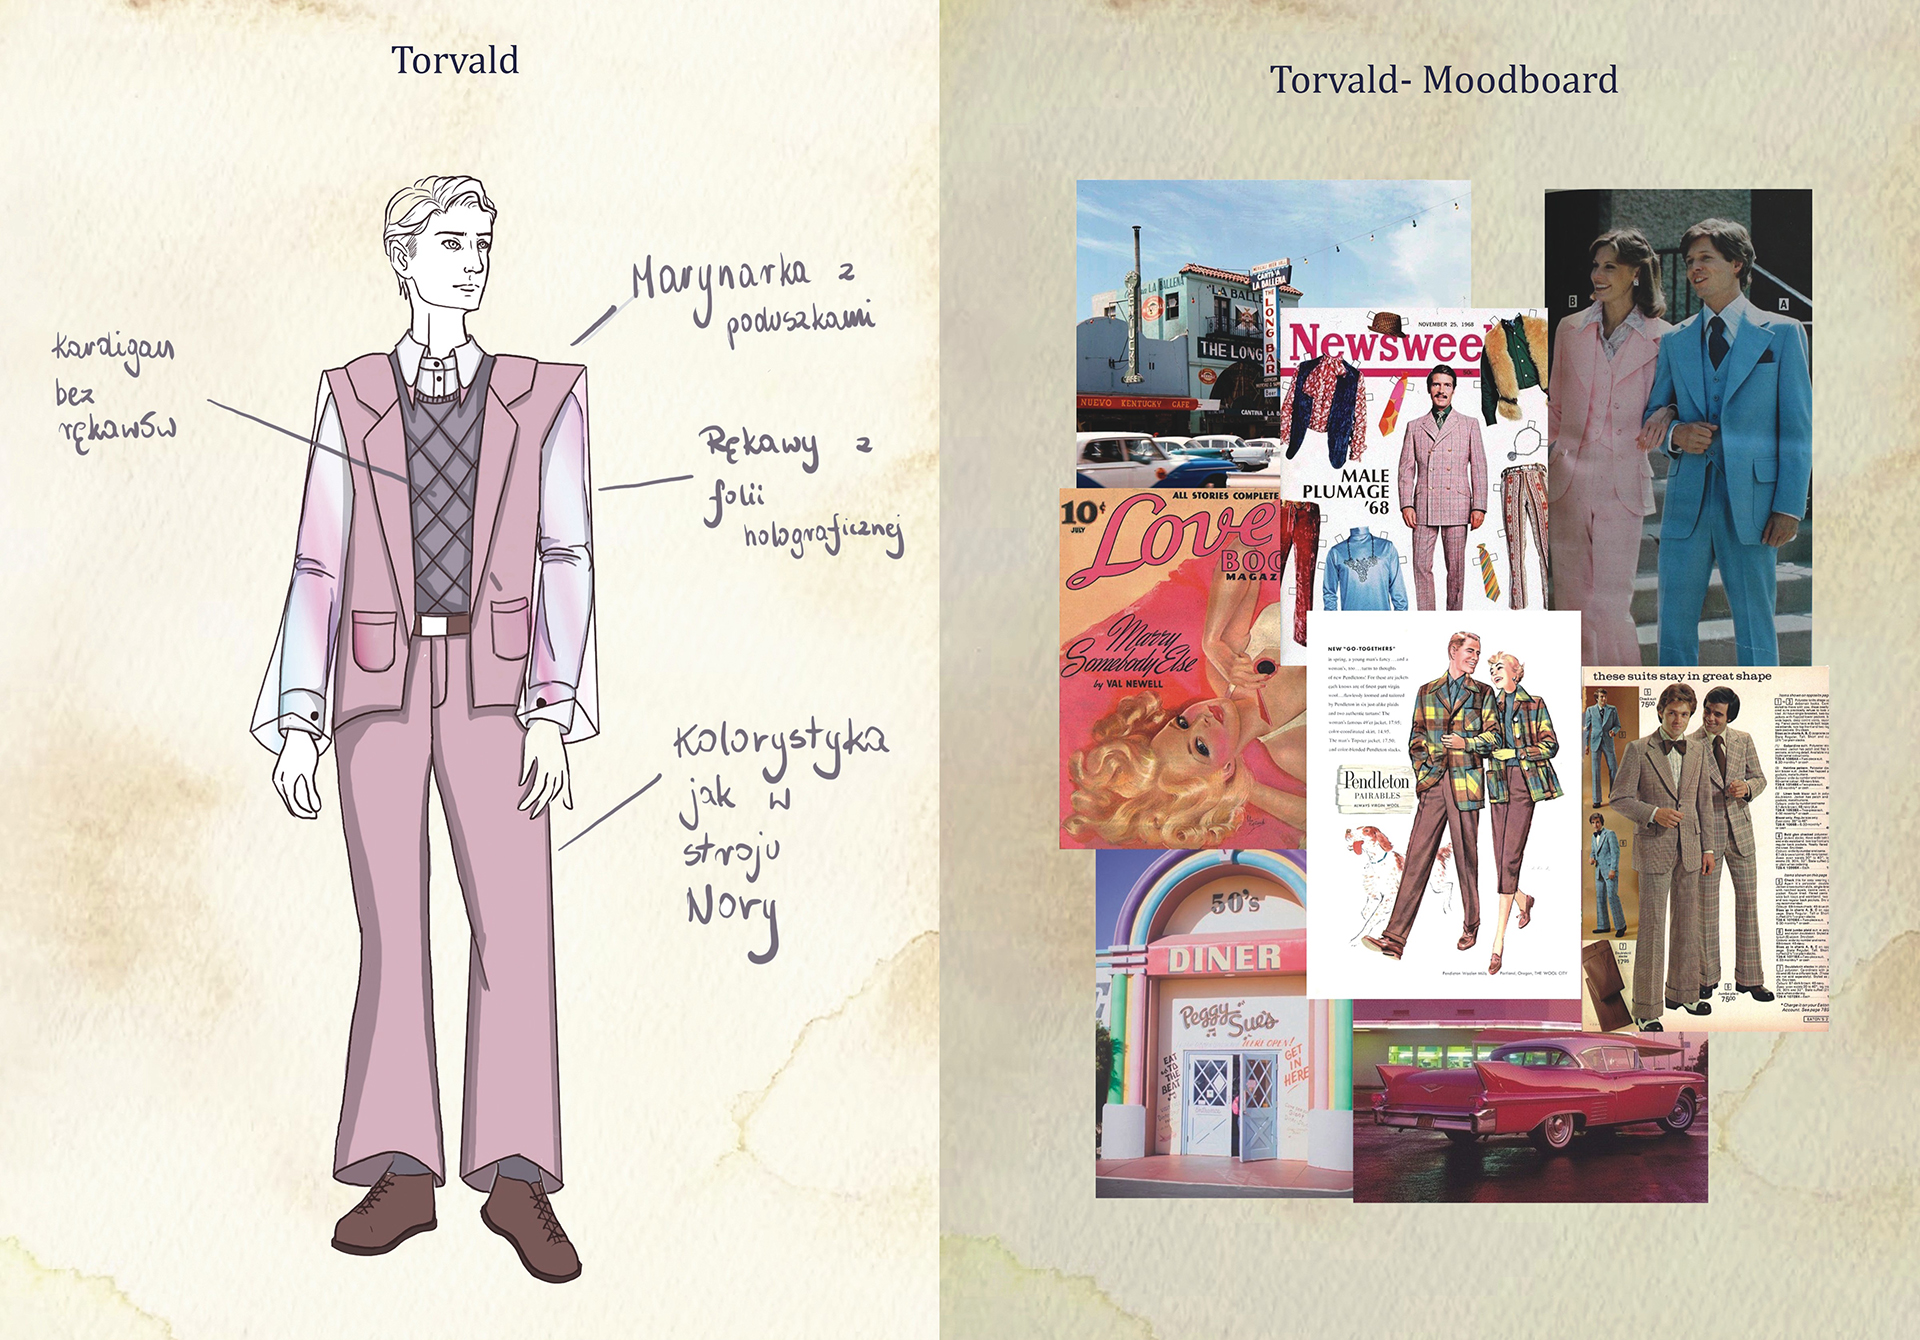 Po lewej rysunek mężczyzny w różowym garniturze z rękawami z folii, fioletowej kamizelce i brązowych butach. Po prawej mapa inspiracji w różowo-brązowych odcieniach.